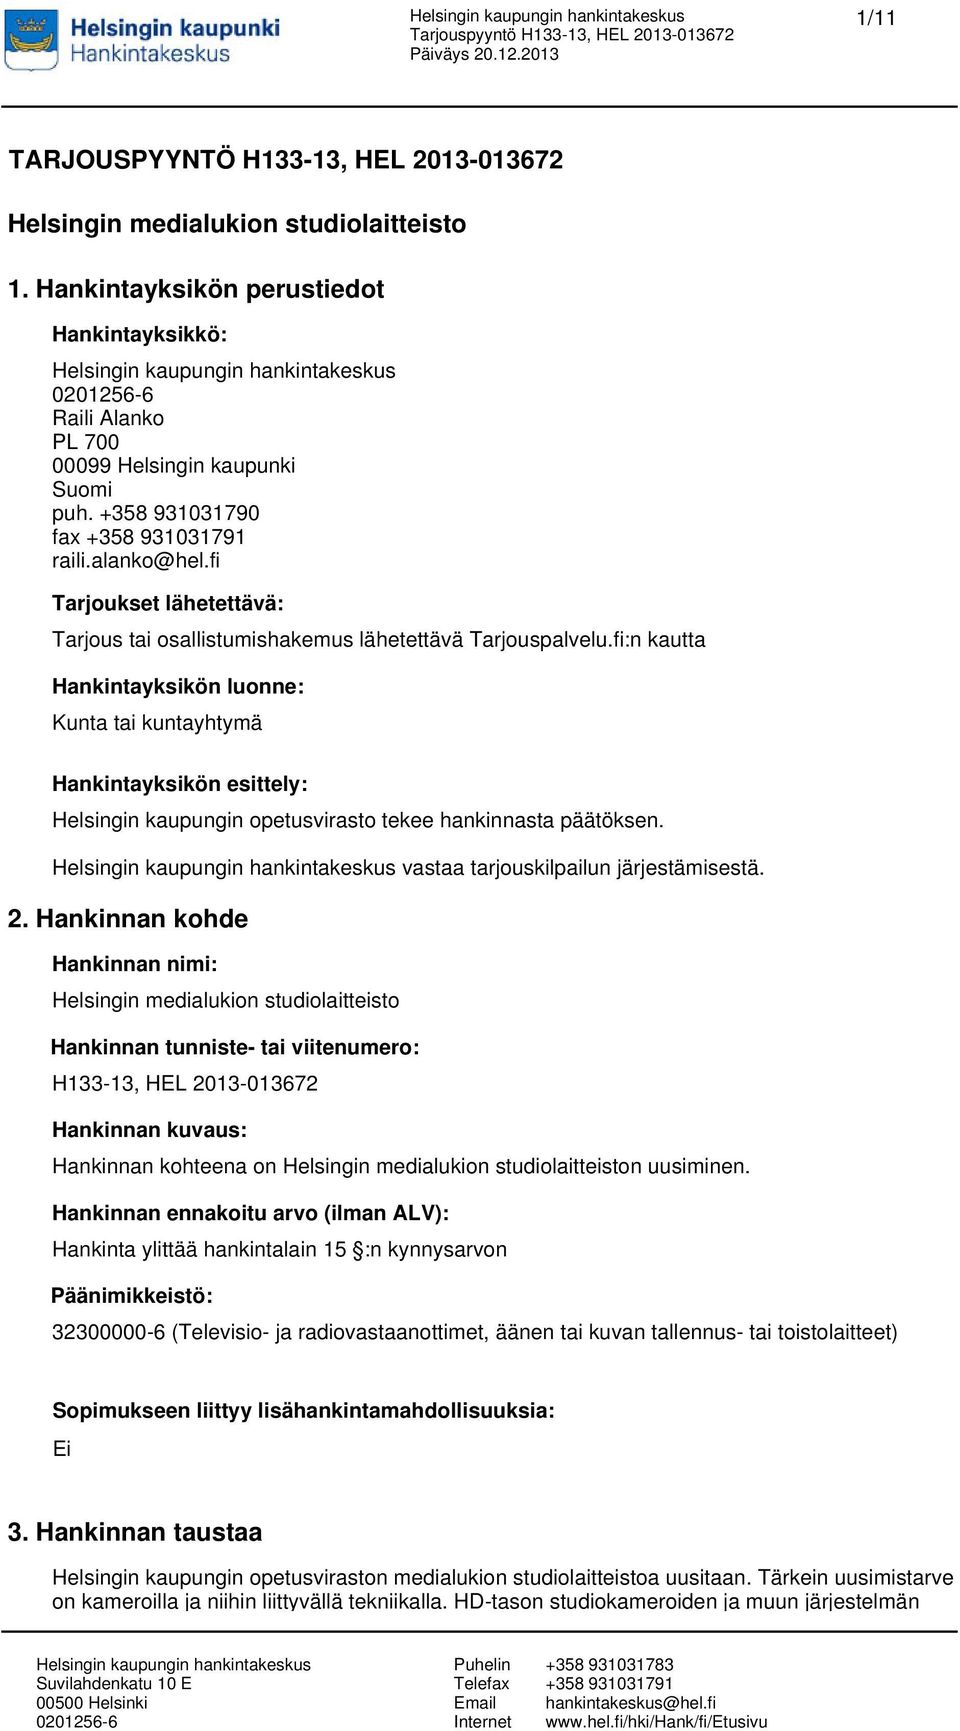 fi:n kautta Hankintayksikön luonne: Kunta tai kuntayhtymä Hankintayksikön esittely: Helsingin kaupungin opetusvirasto tekee hankinnasta päätöksen. vastaa tarjouskilpailun järjestämisestä. 2.